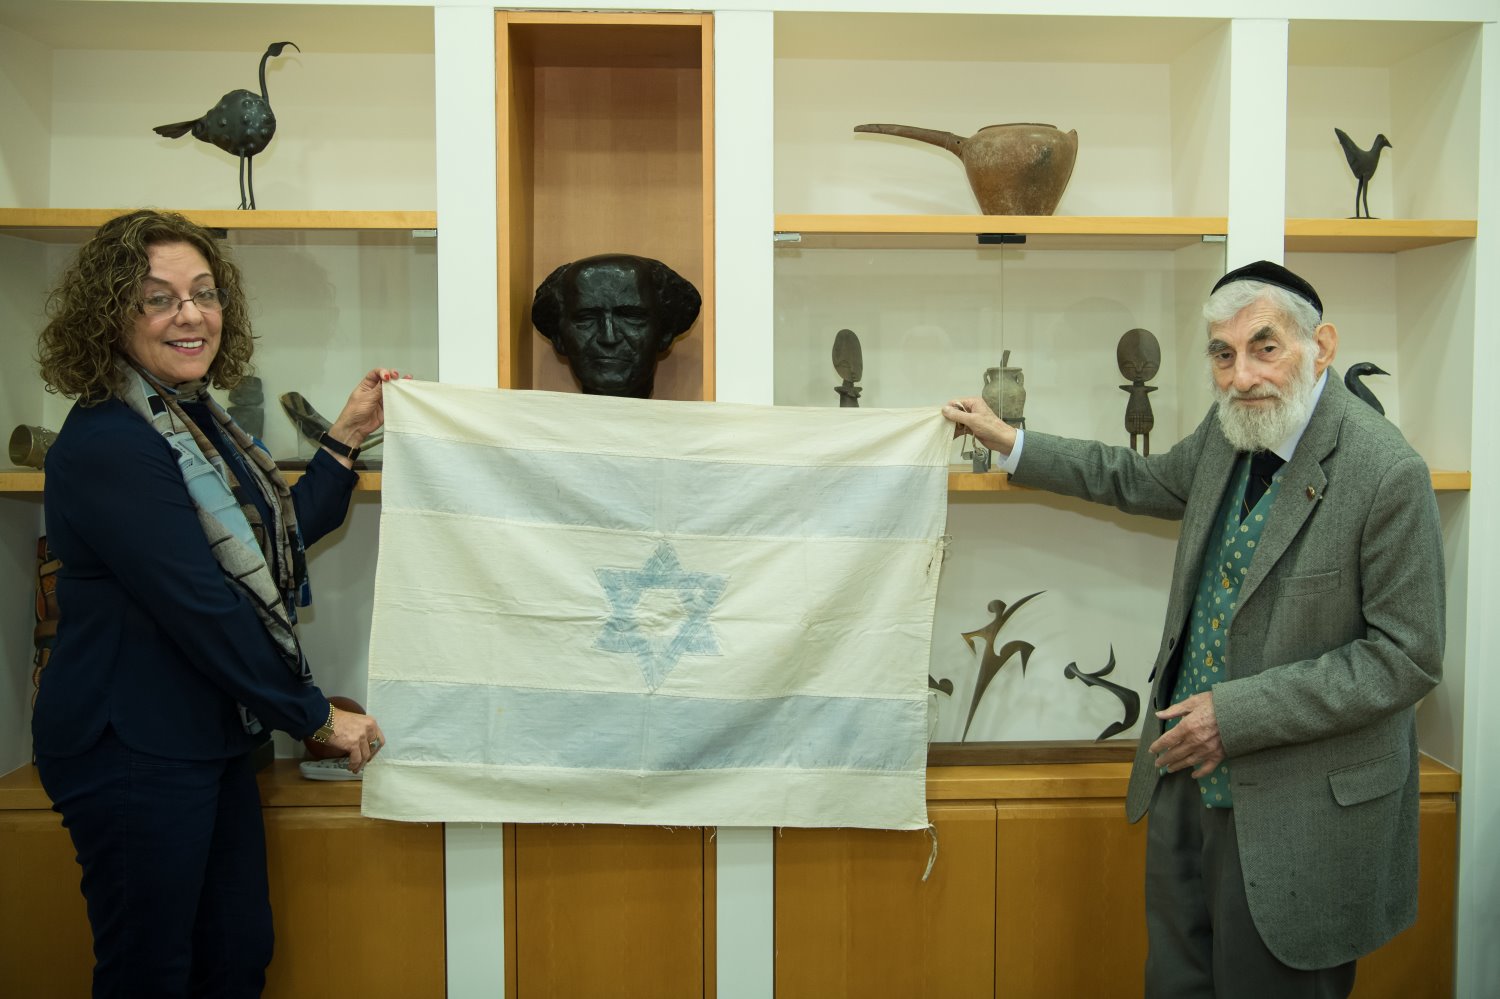 נשיאת האוניברסיטה, פרופ' רבקה כרמי והאספן עזרא גורדסקי מציגים את הדגל ההיסטורי | צילום: יח"צ